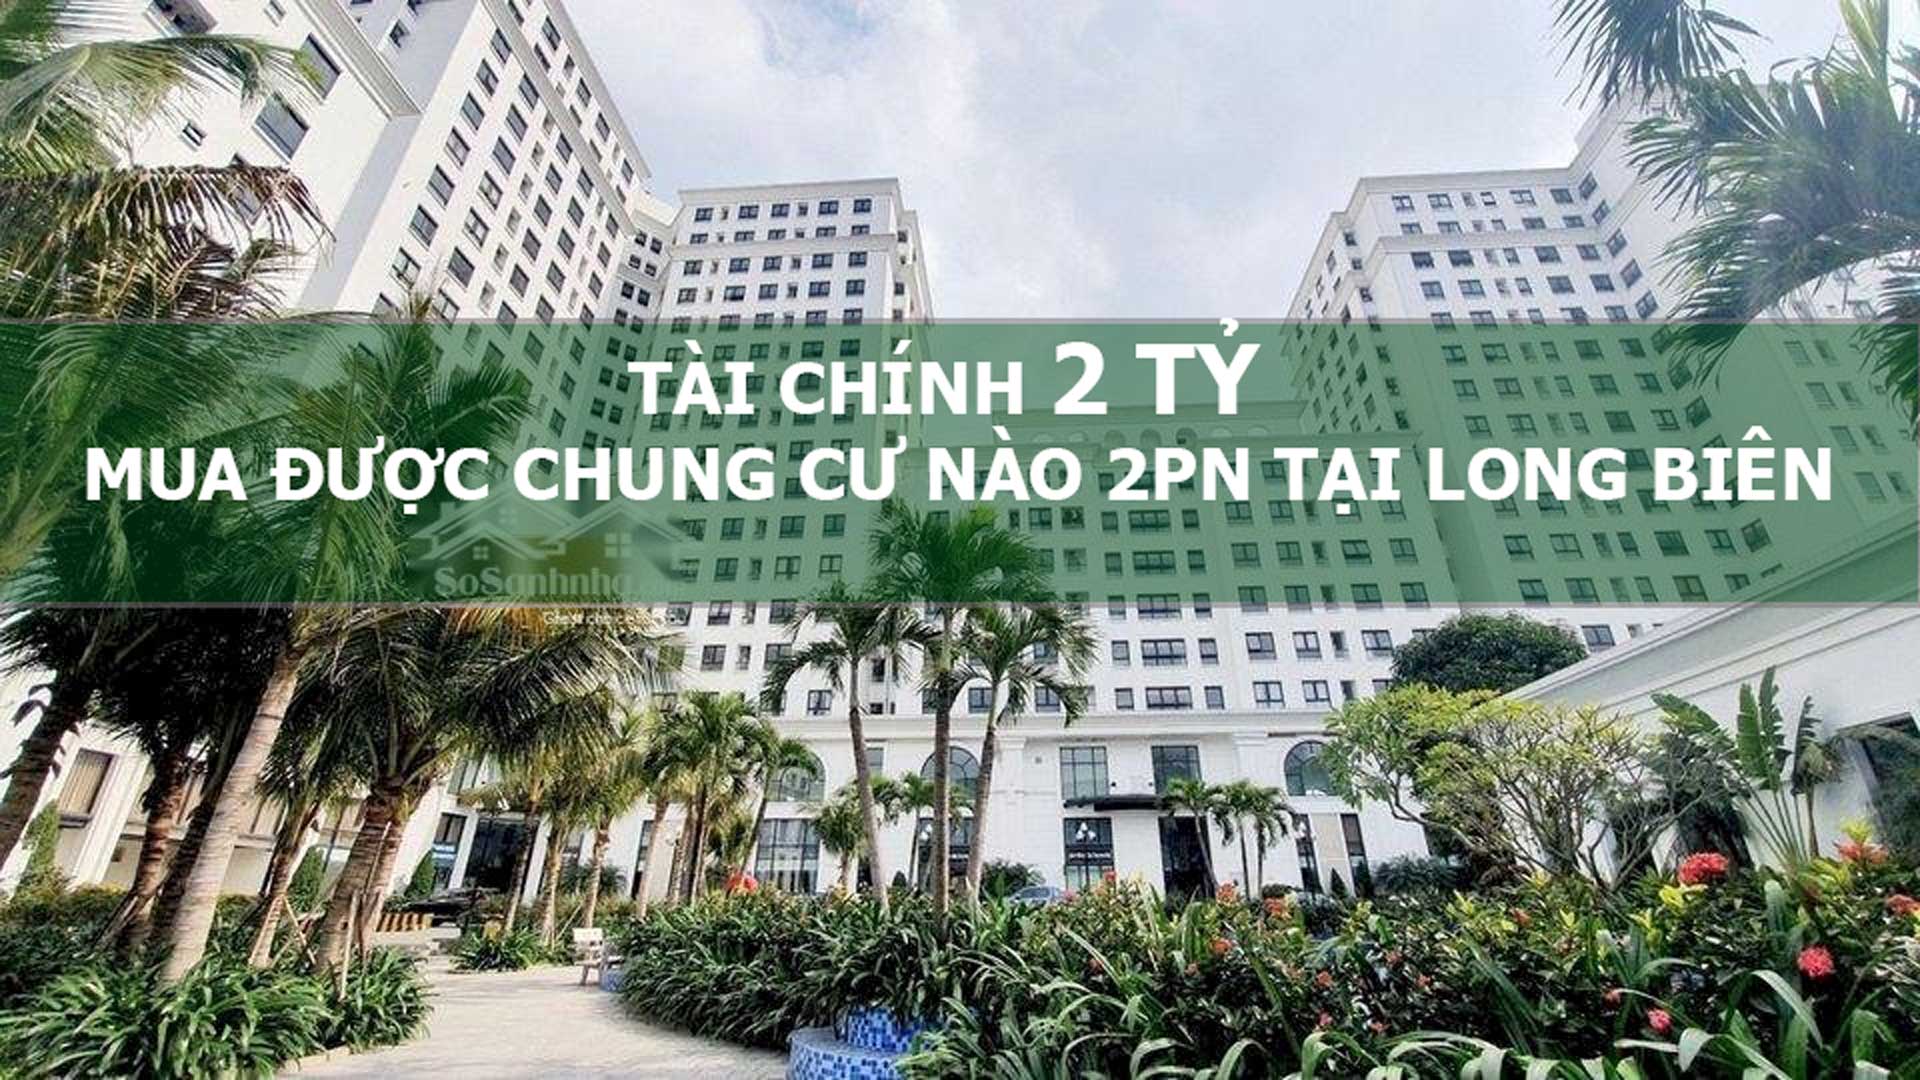 Tài chính 2 tỷ mua được chung cư nào 2PN tại Long Biên